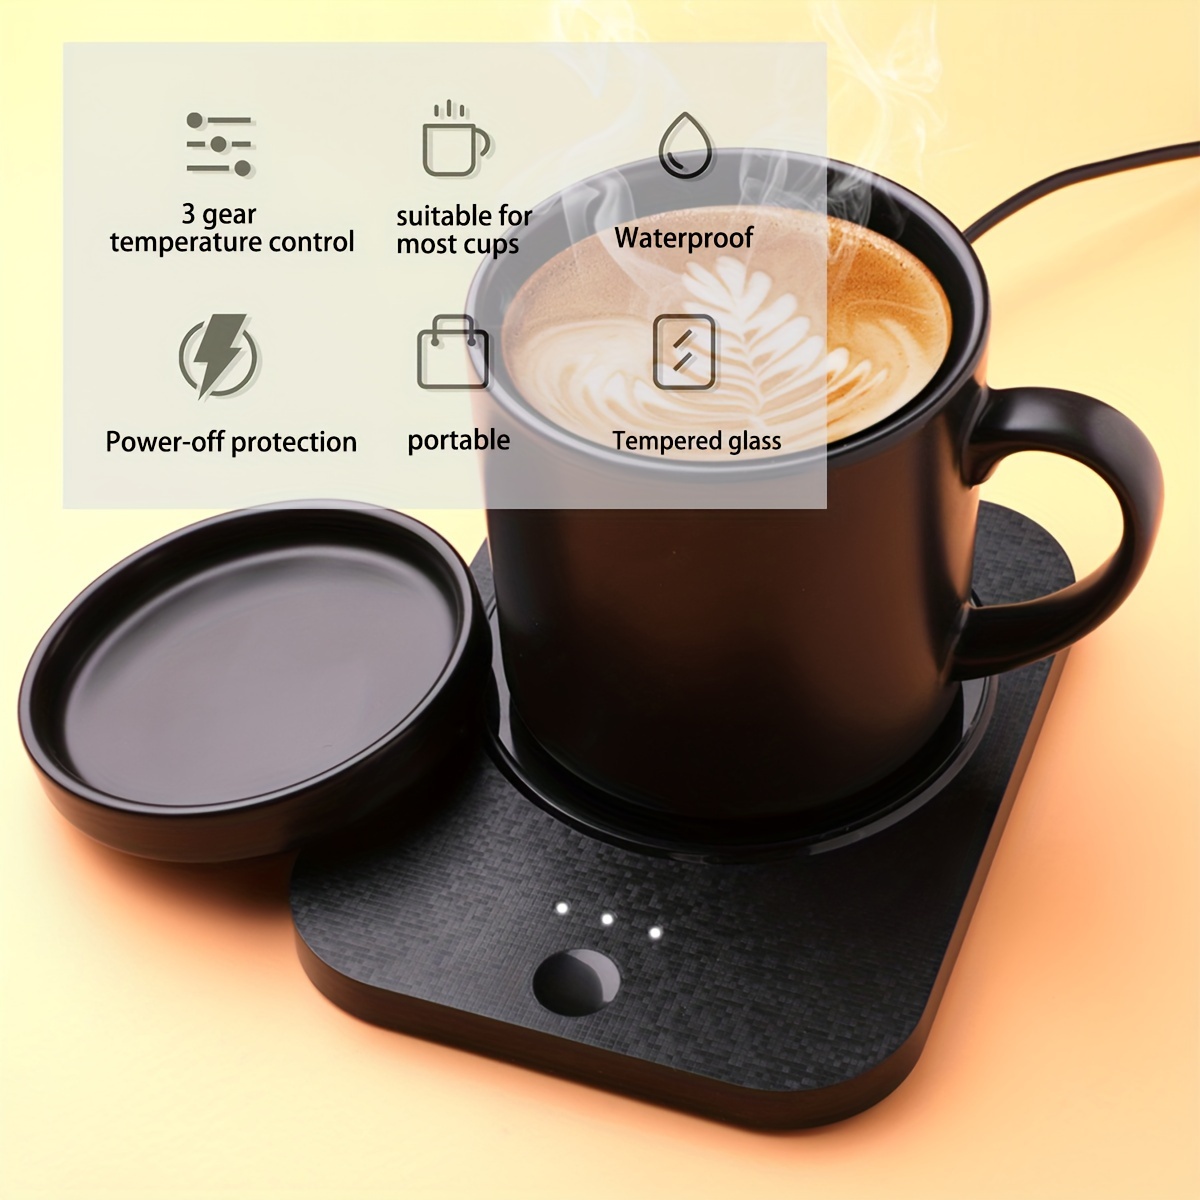  VOBAGA Calentador de taza de café, calentador de café eléctrico  para escritorio con apagado automático, 3 ajustes de temperatura para  calentar y calentar café, bebidas, leche, té y chocolate caliente (sin